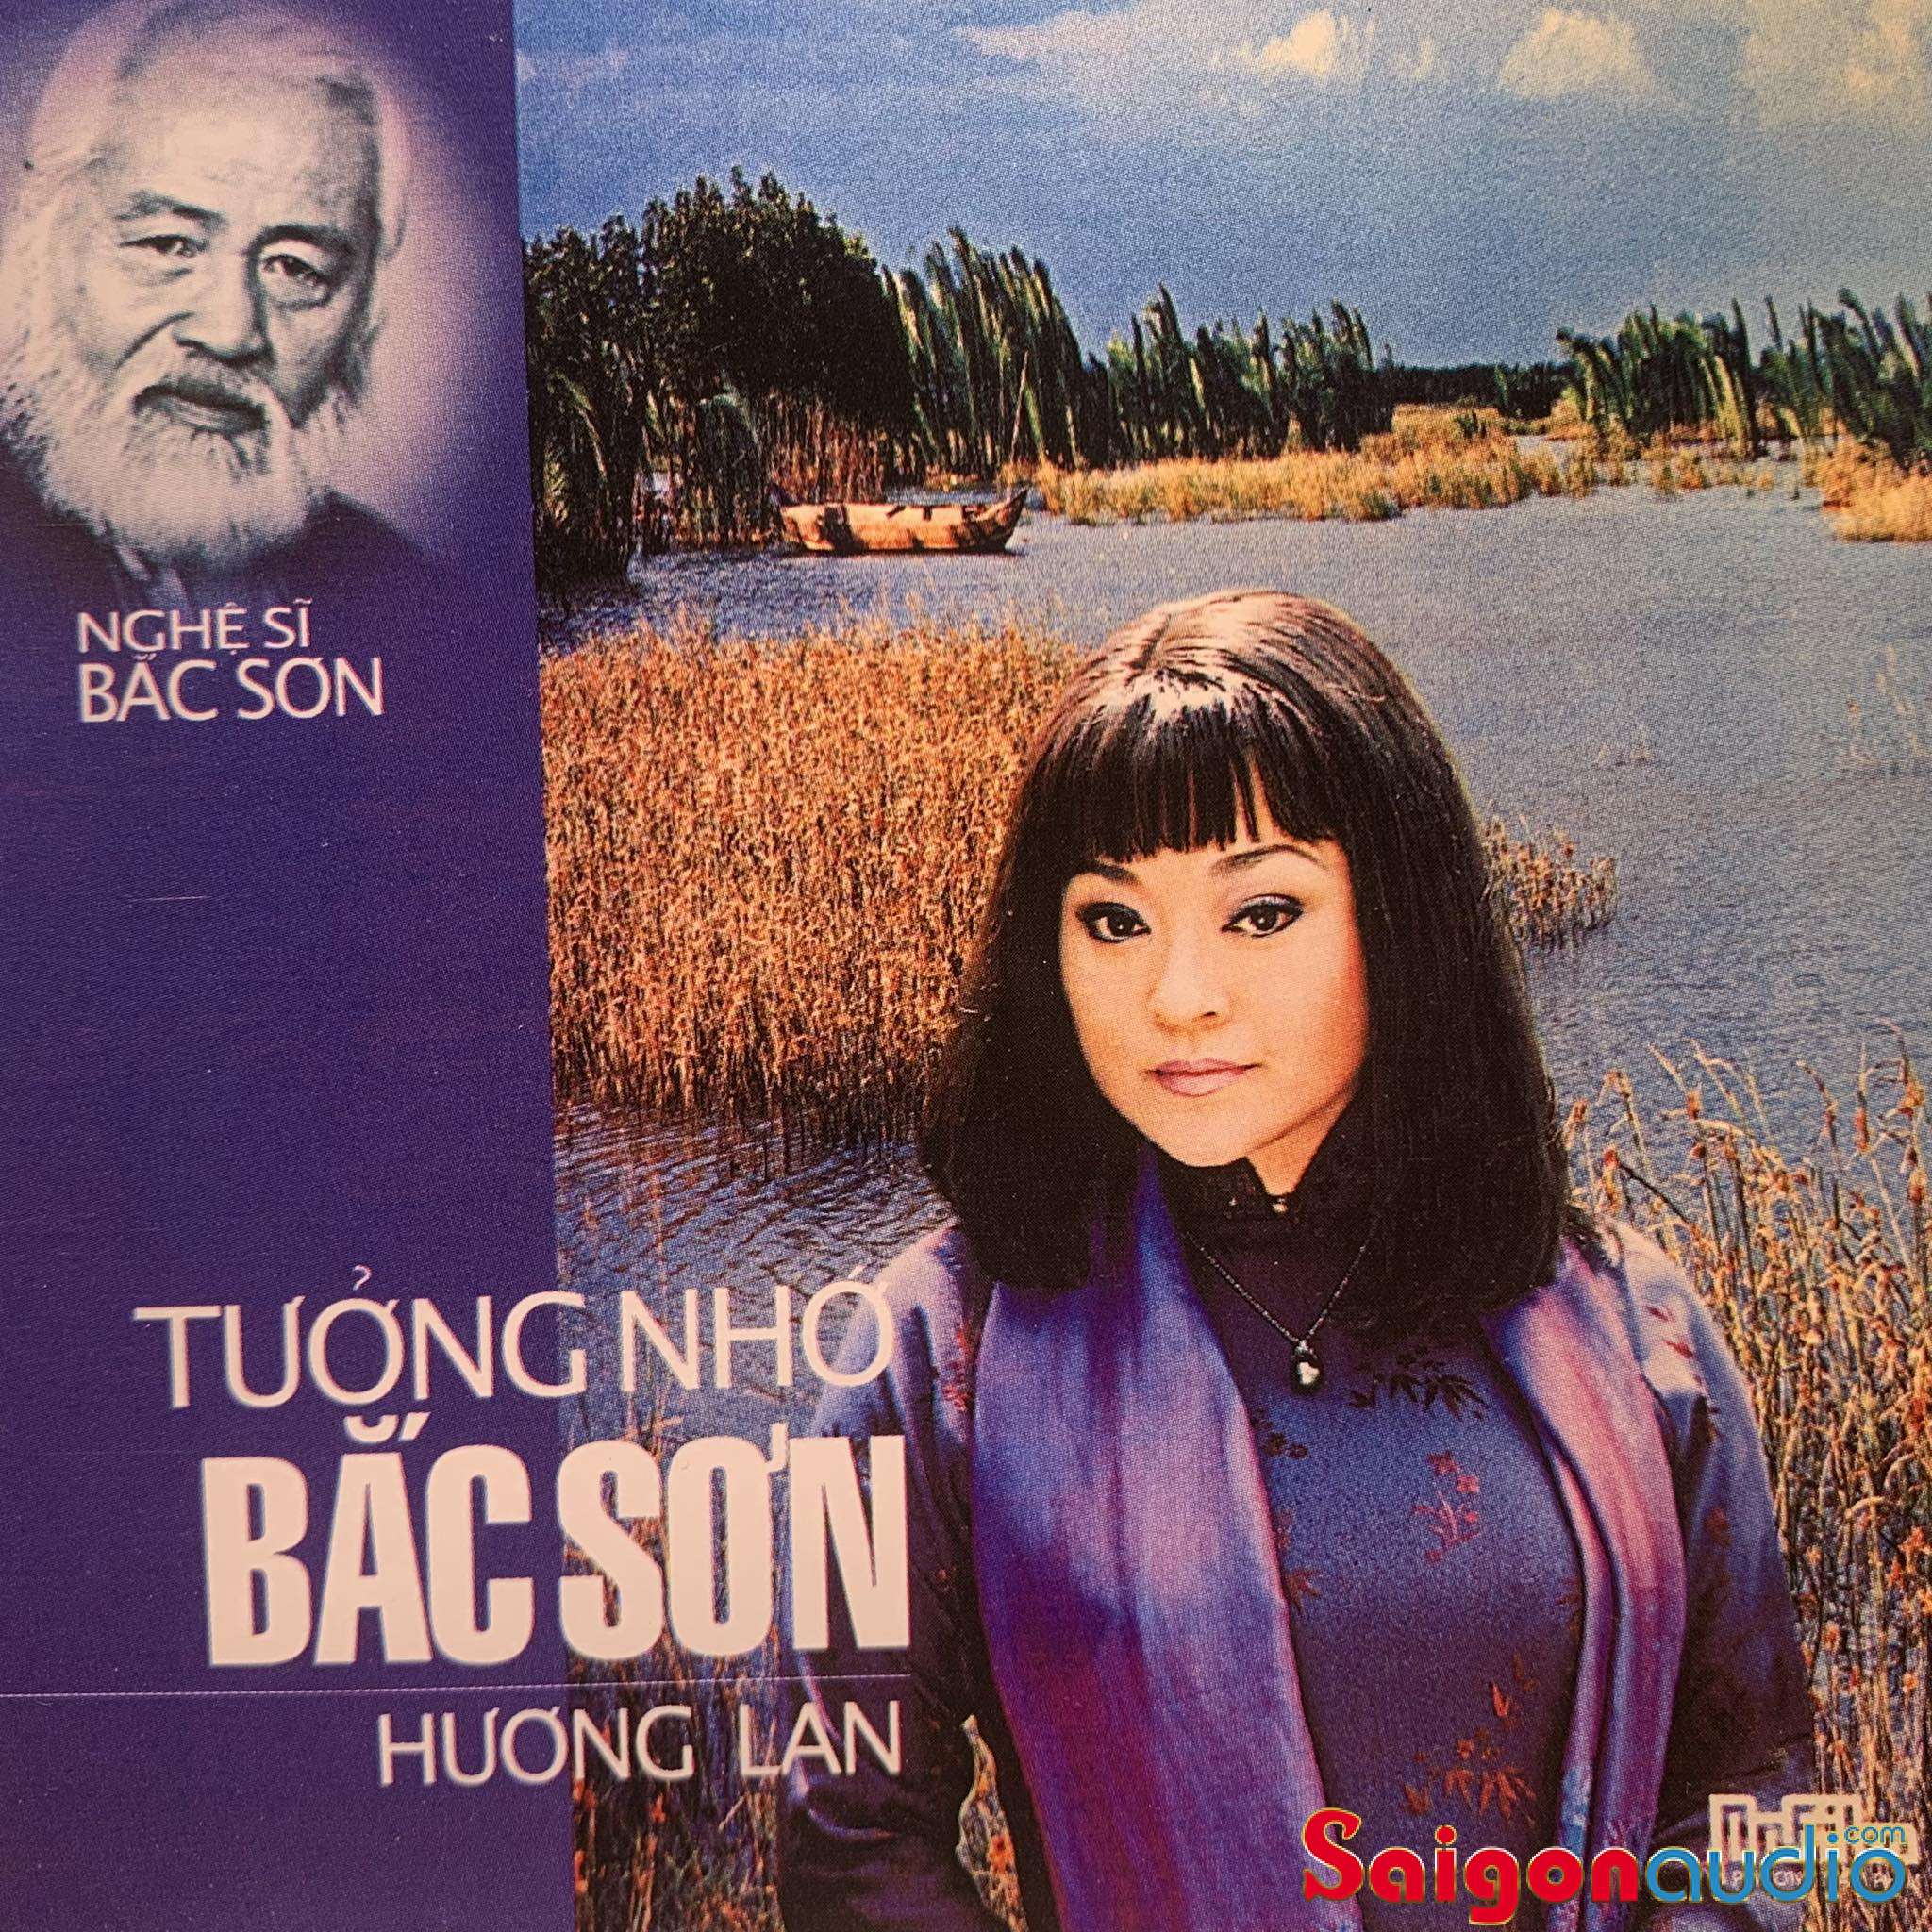 Đĩa CD gốc Hương Lan - Tưởng Nhớ Nhạc sỹ Bắc (Free ship khi mua 2 đĩa CD cùng hoặc khác loại)